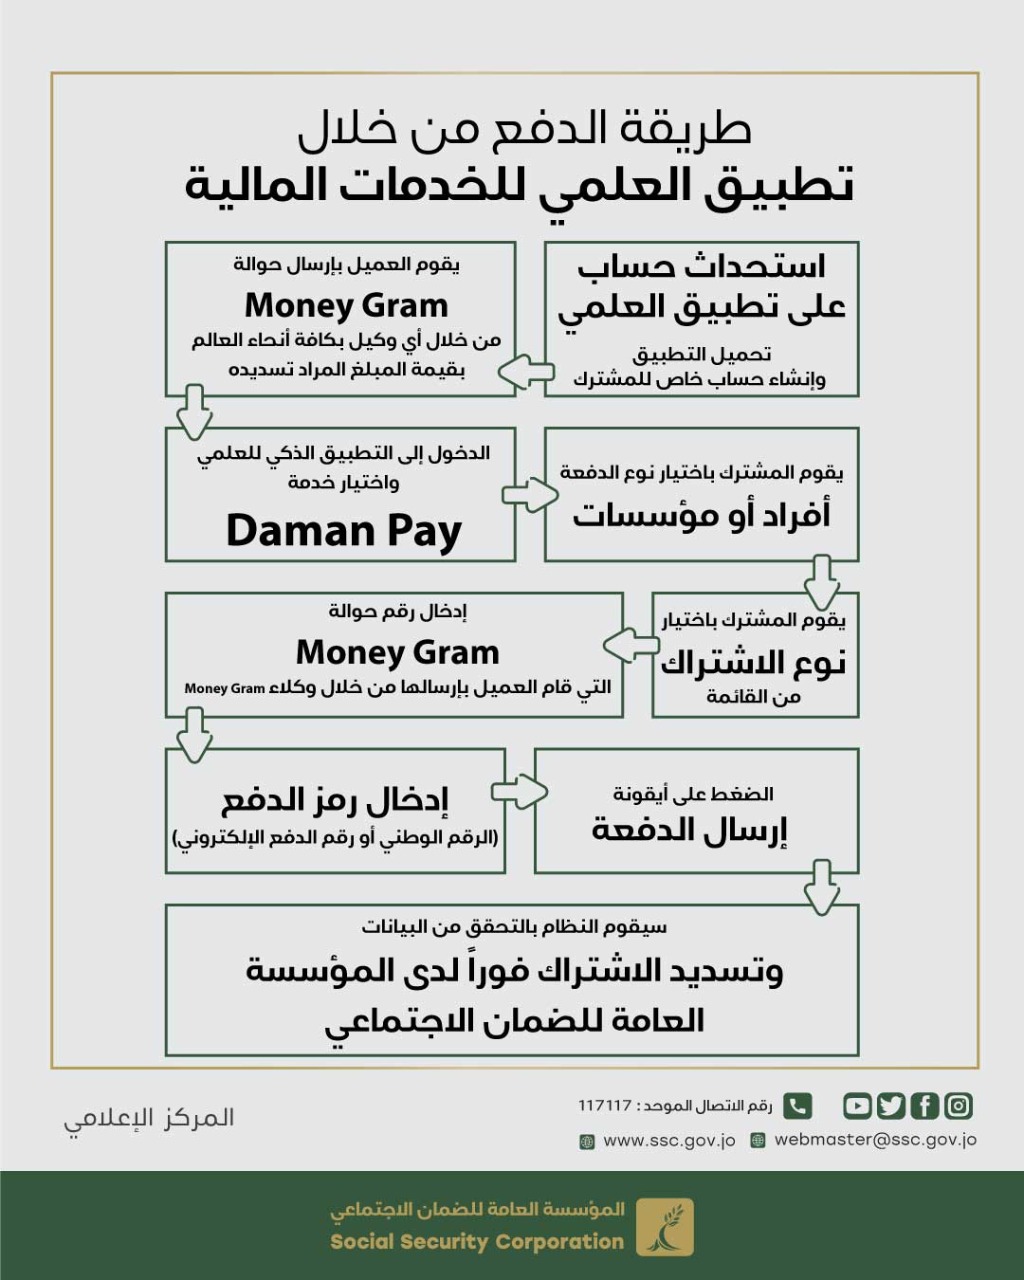 الضمان: انضمام العلمي للخدمات المالية لتقديم خدمة Daman Pay